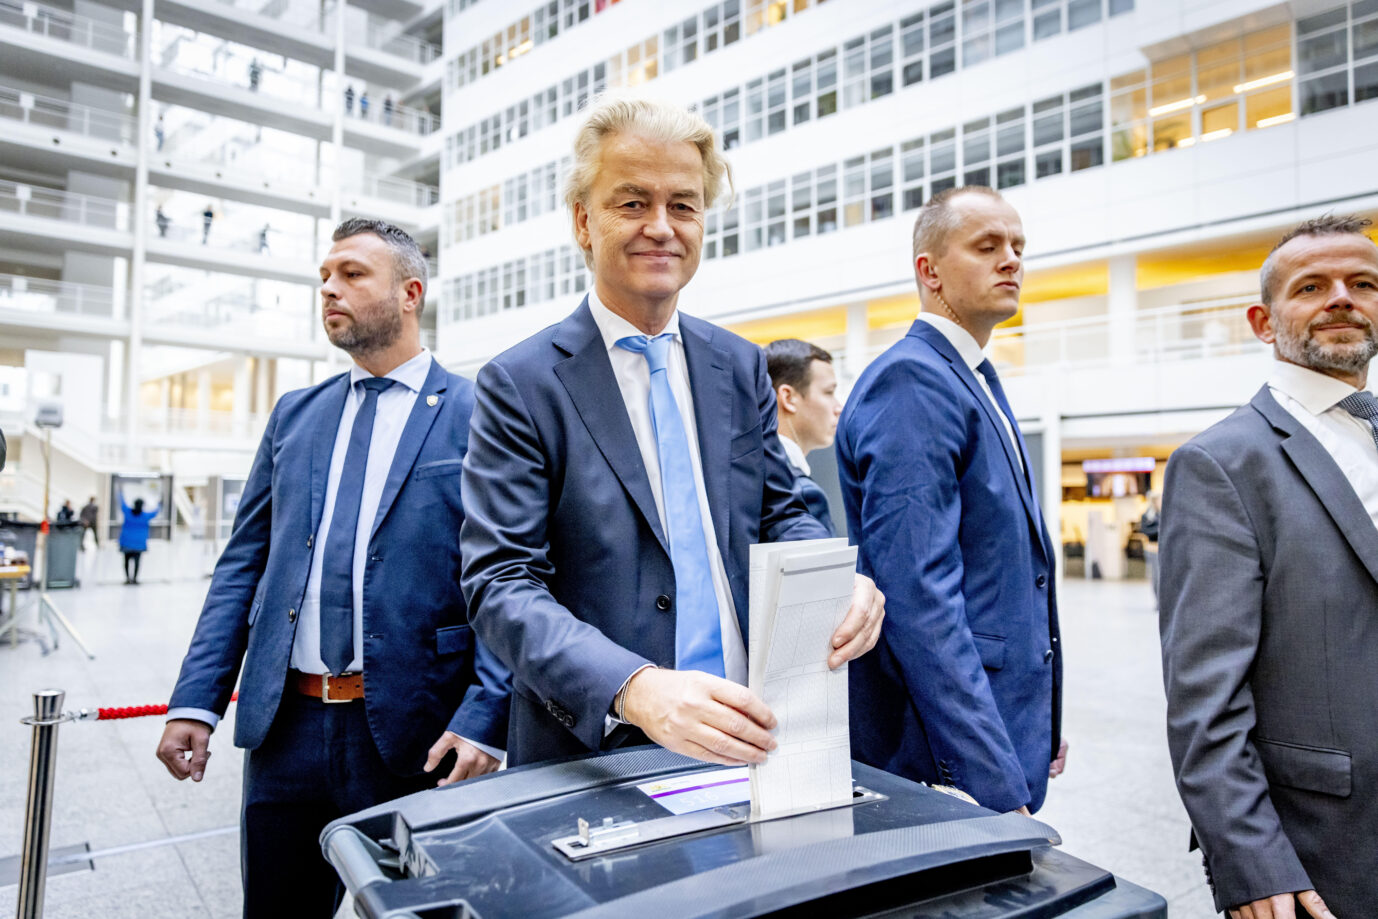 Der PVV-Parteivorsitzende Geert Wilders an der Wahlurne in Den Haag, Niederlande. Seine Partei kämpft um den ersten Platz. Wilders vertritt islamkritische Positionen und möchte Migration aus der muslimischen Welt begrenzen. Unter anderem ist er als „Dutch Trump“ bekannt.